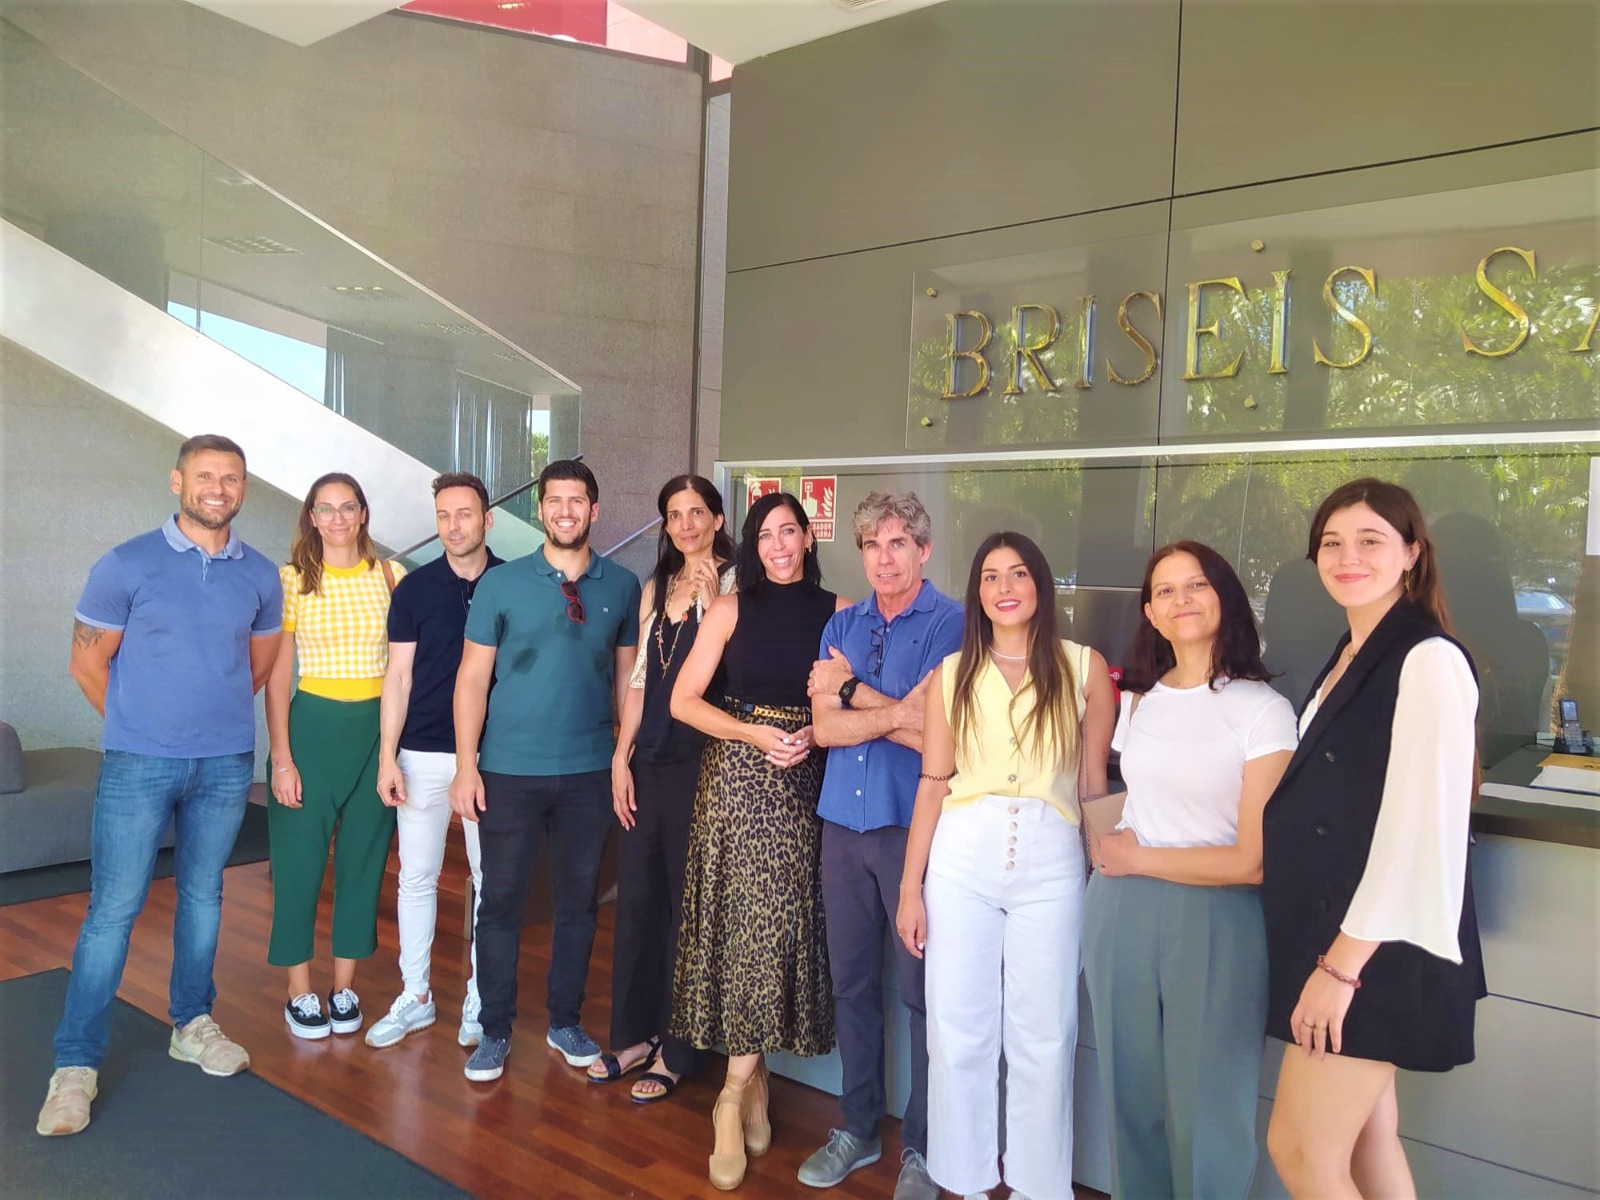 Un nutrido grupo de asociados del Club de Marketing de Almería visitan las entrañas de la fábrica Briseis